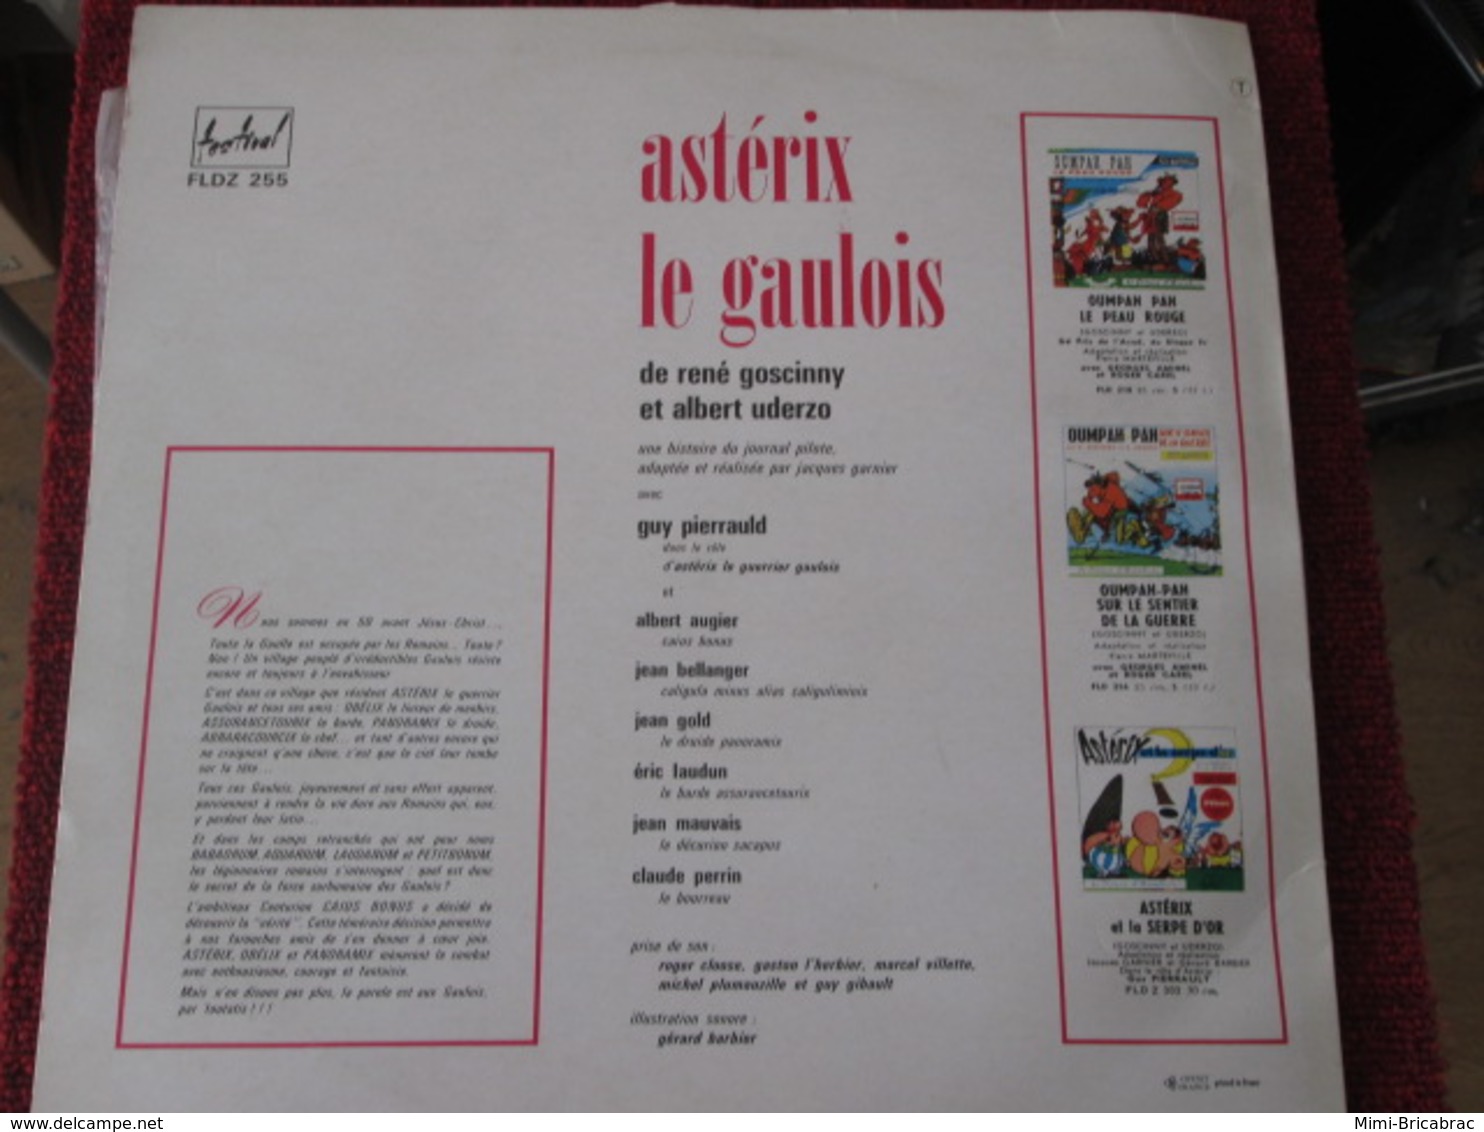 BACPLASTCAV Disque BANDES DESSINEE ANNEES 60 / ASTERIX LE GAULOIS 33T 30 CM - Disques & CD